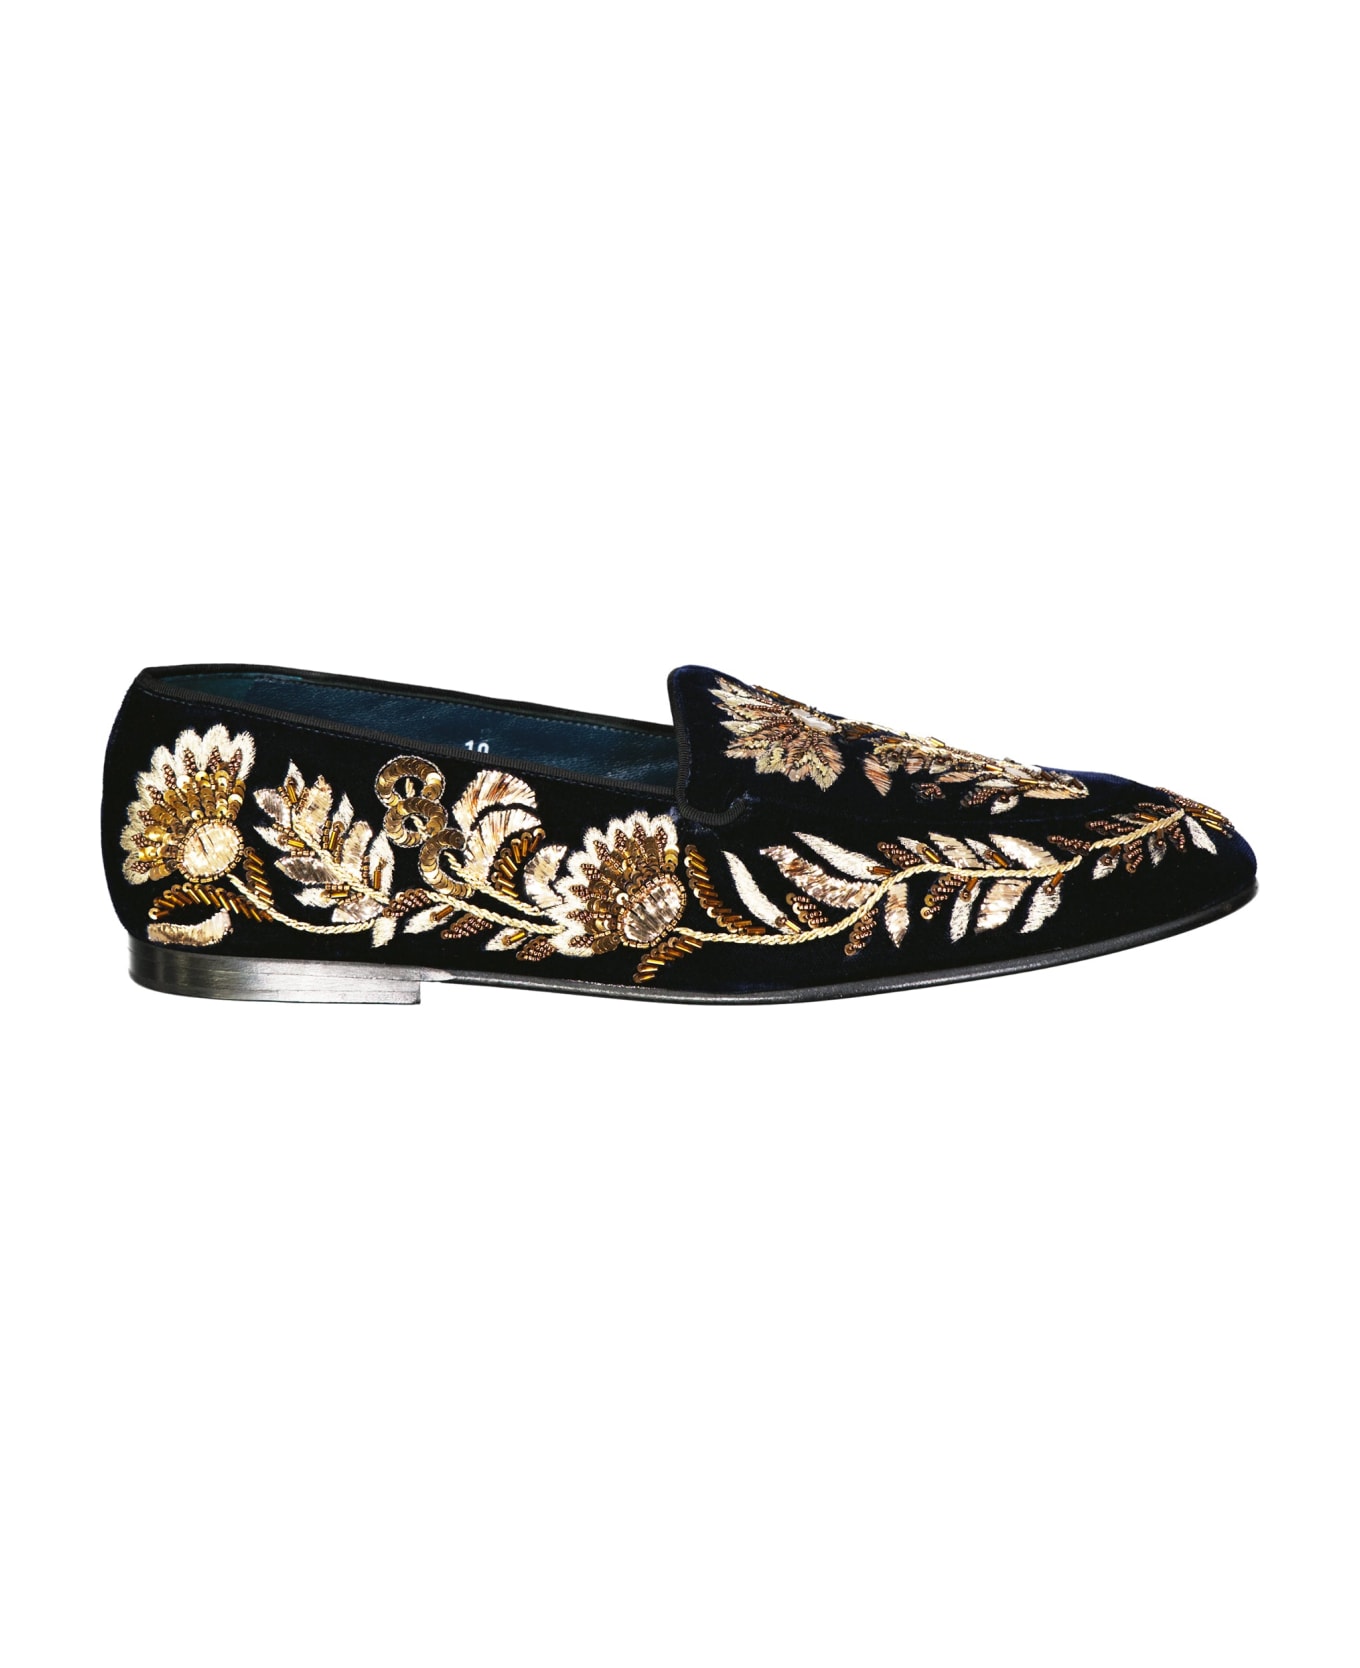 Dolce & Gabbana Crystal Embelished Loafers - Black